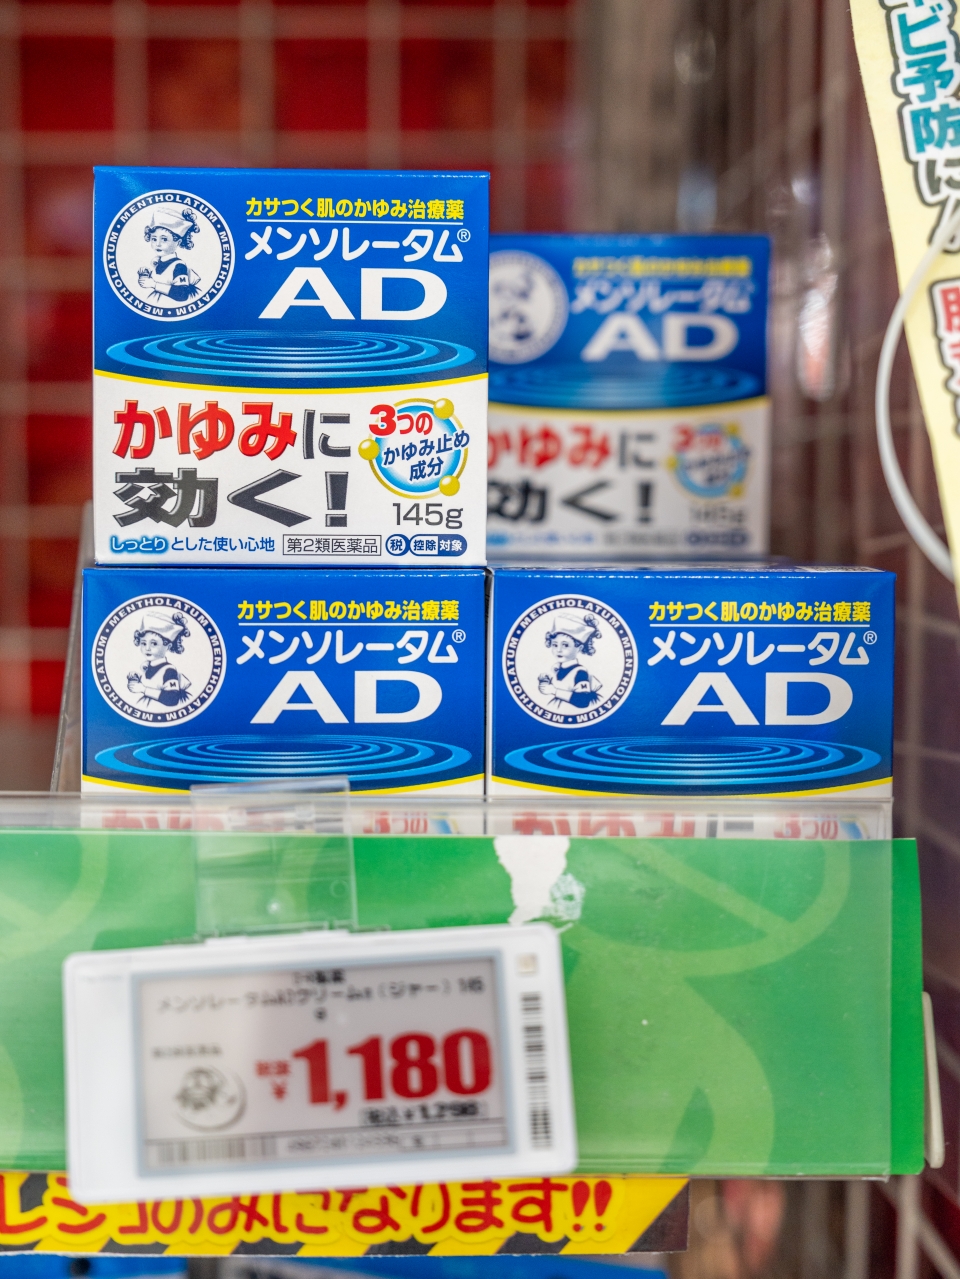 일본 돈키호테 쇼핑리스트 연고 과자 추천 : 일본 드럭스토어